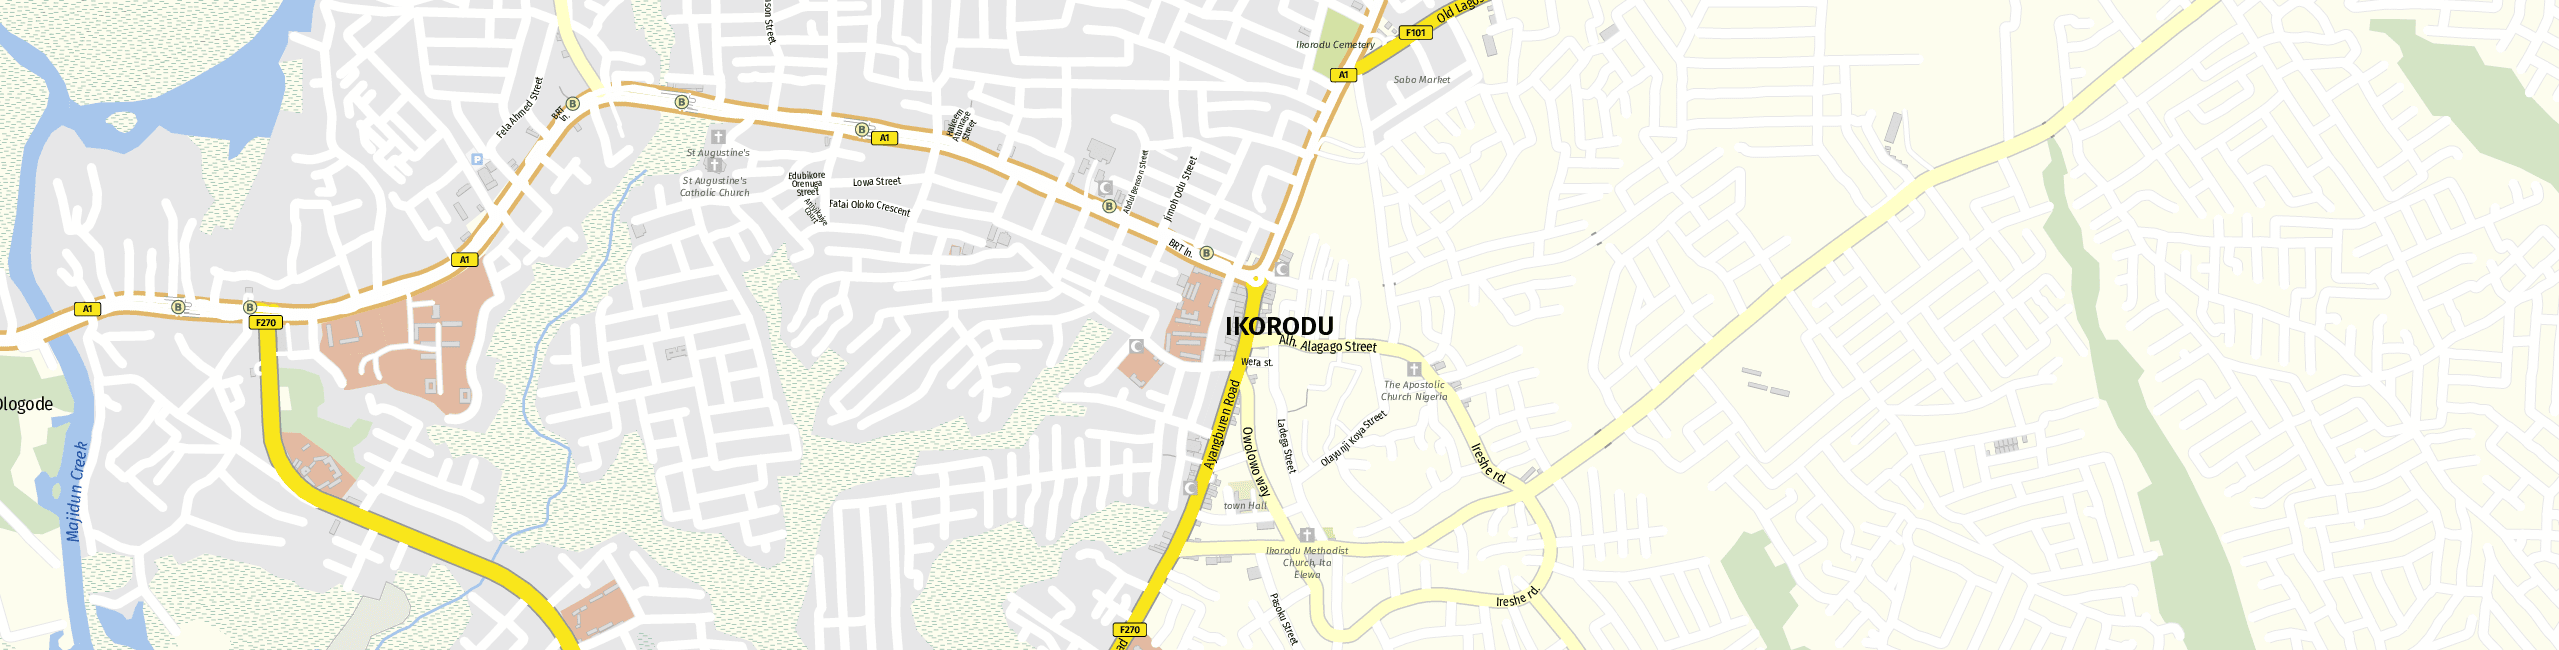 Stadtplan Ikorodu zum Downloaden.